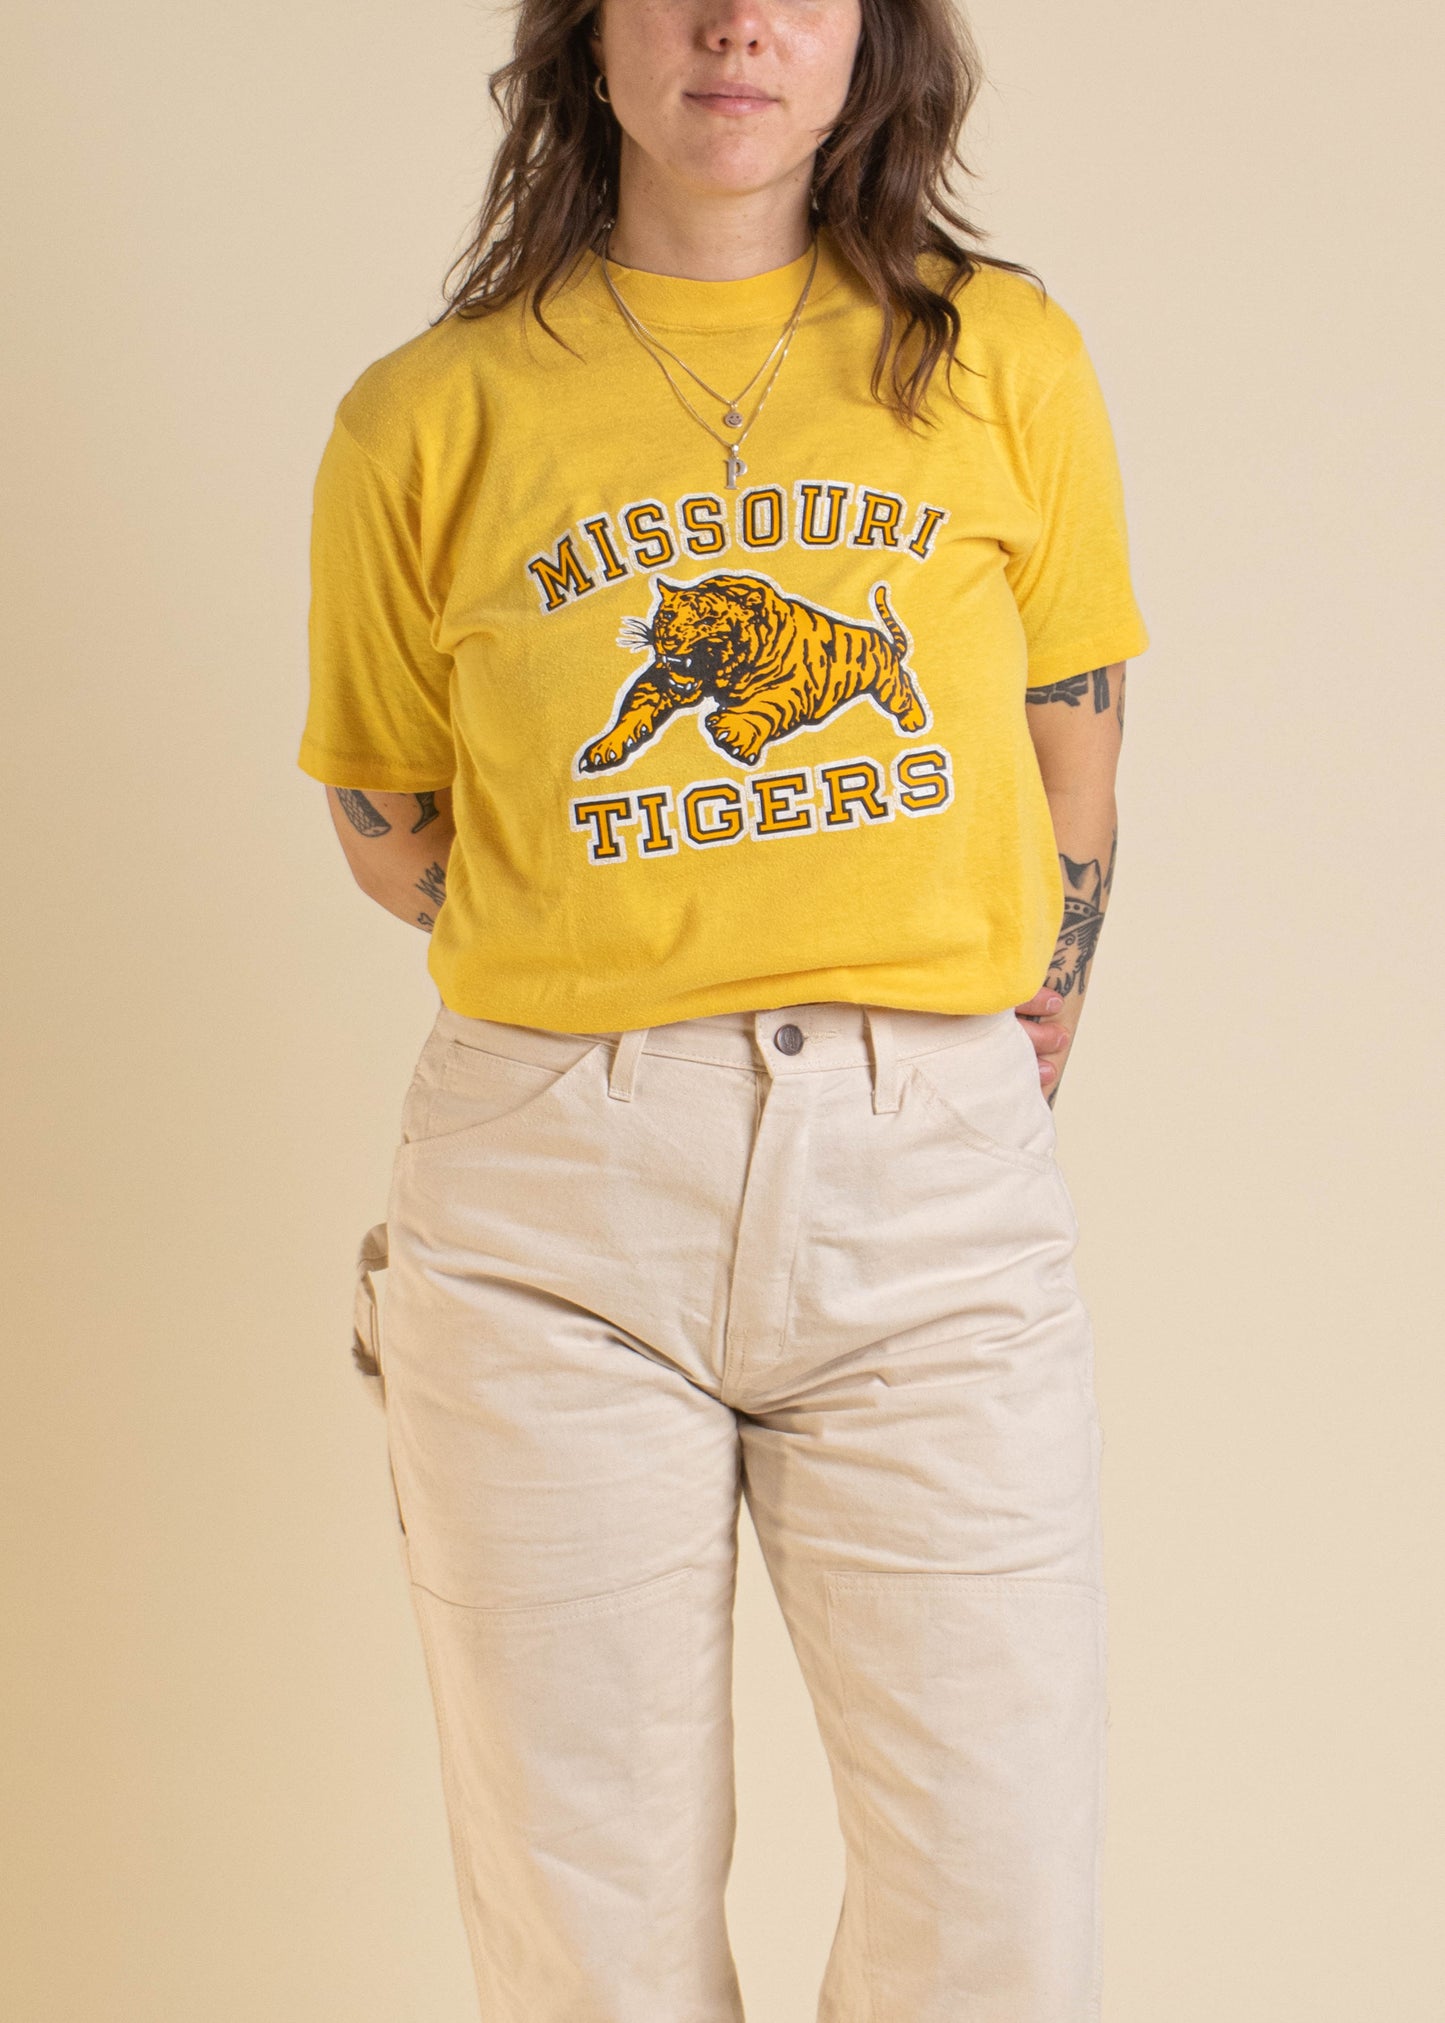 1980s Missouri Tigers T-Shirt Size S/M